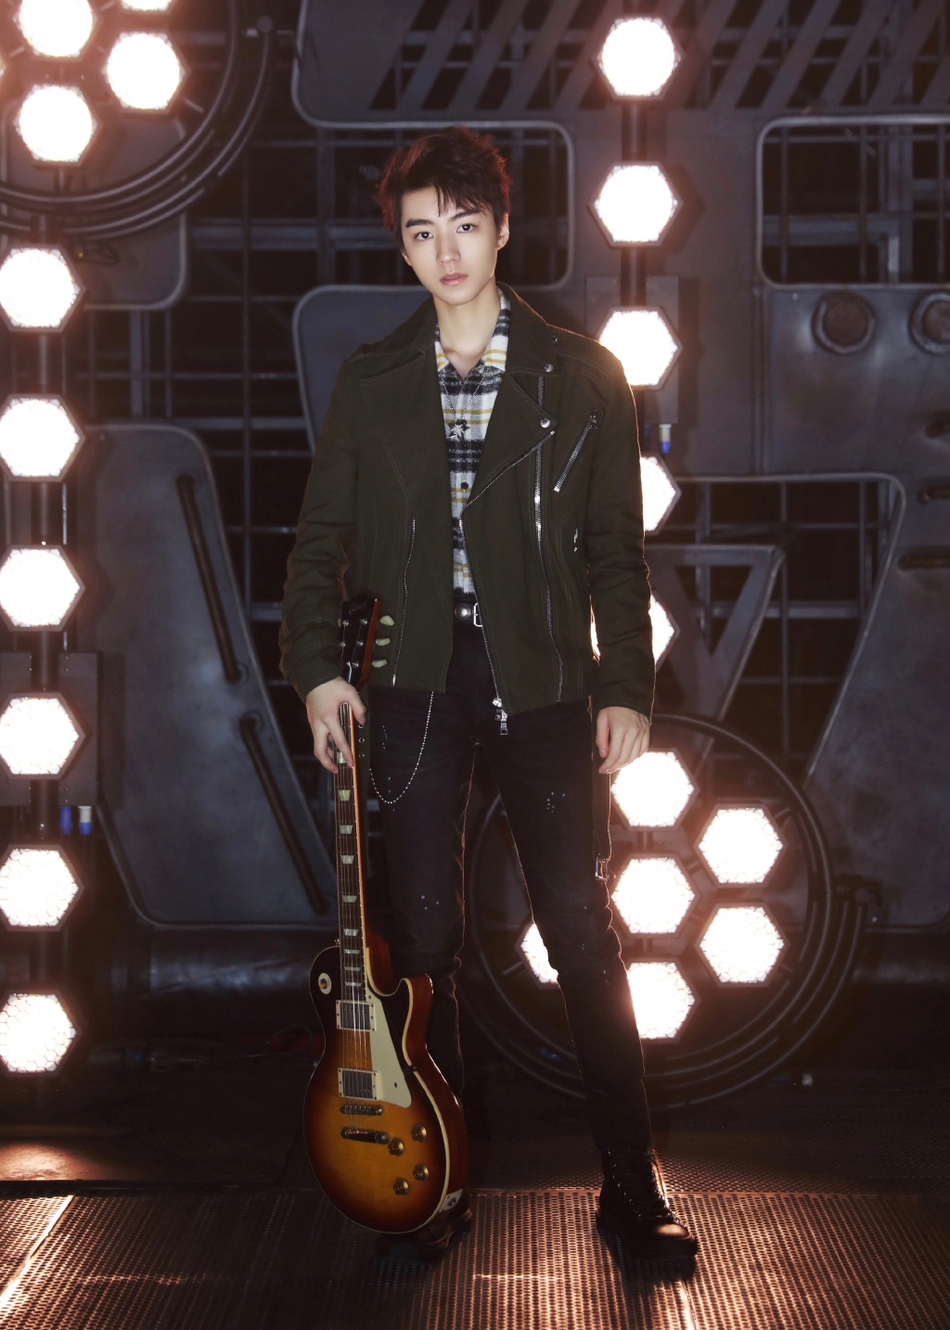 照片中,王俊凯身穿拉链图案的西服趣味十足,手拿吉他展现少年多重魅力